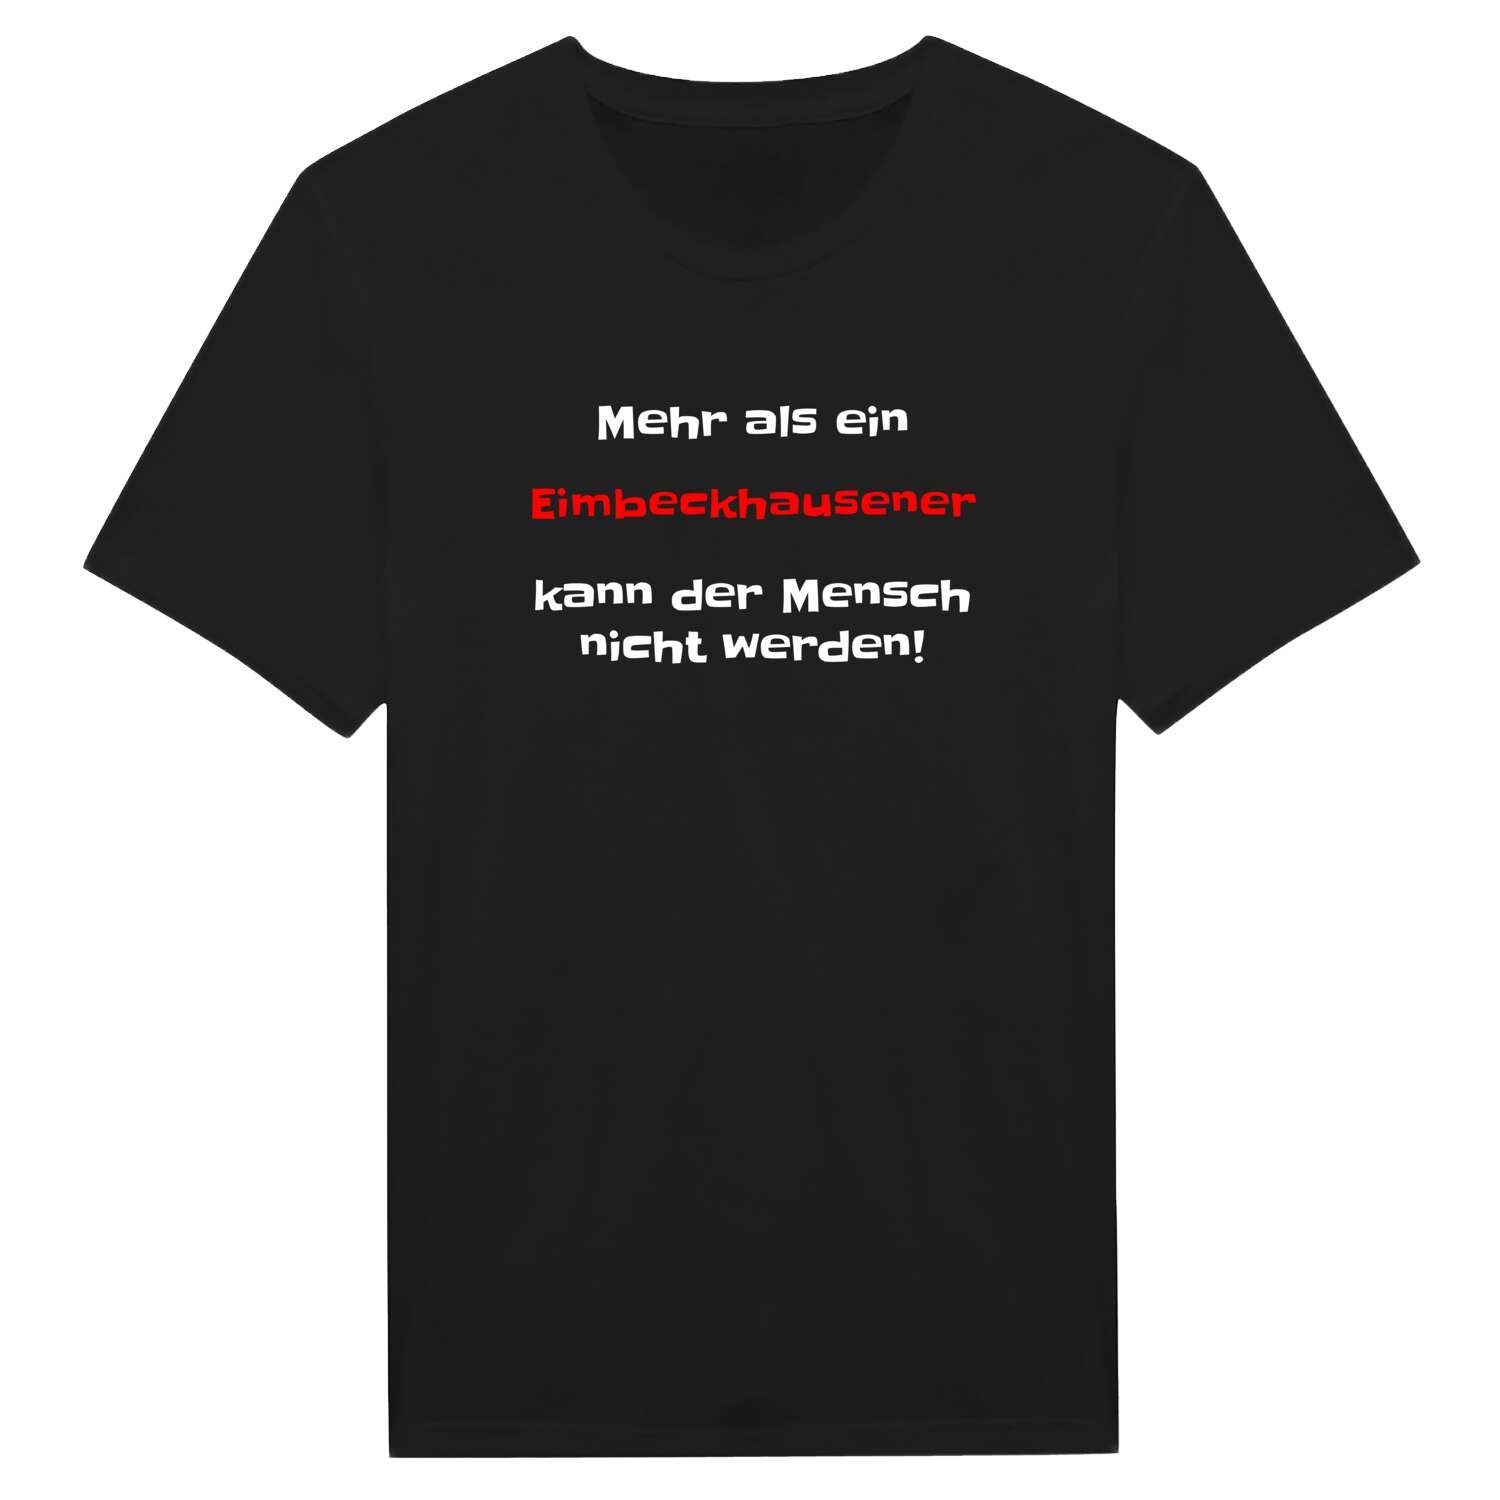 Eimbeckhausen T-Shirt »Mehr als ein«